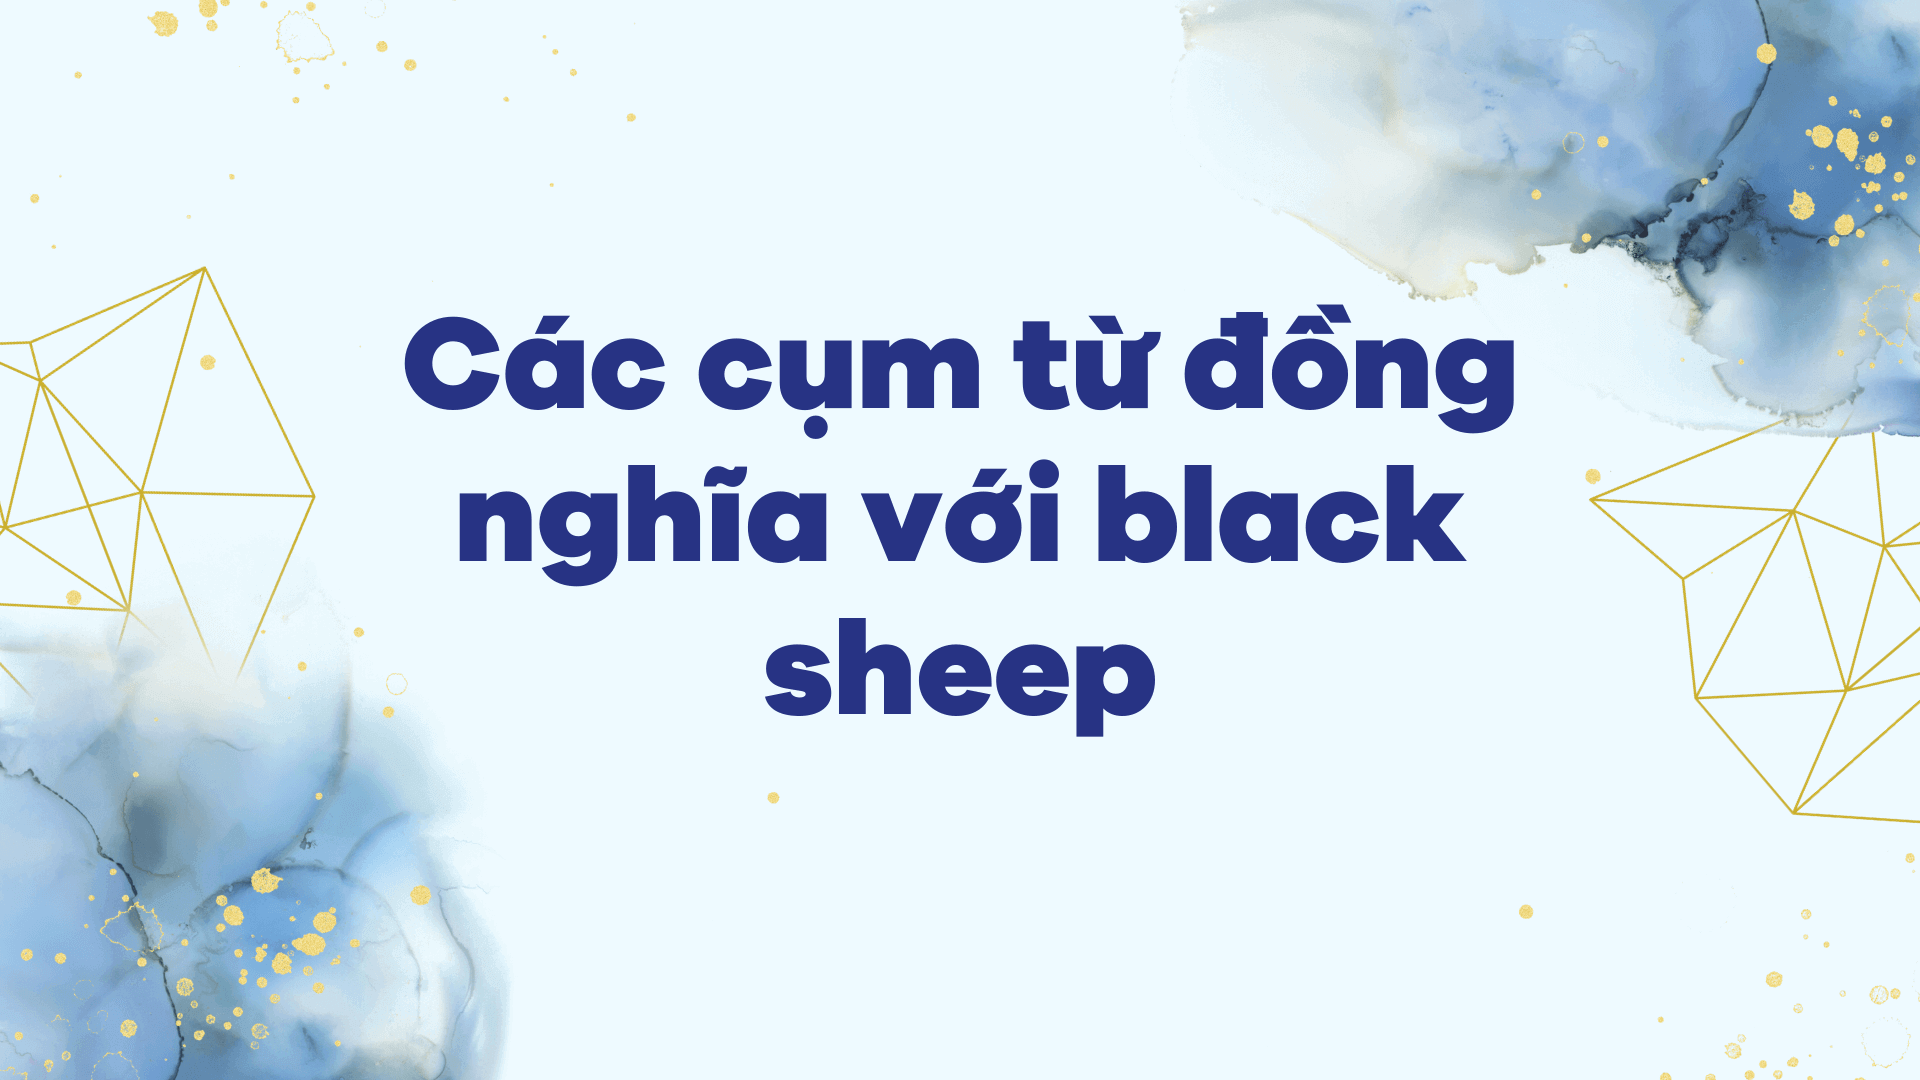 Các cụm từ đồng nghĩa với black sheep